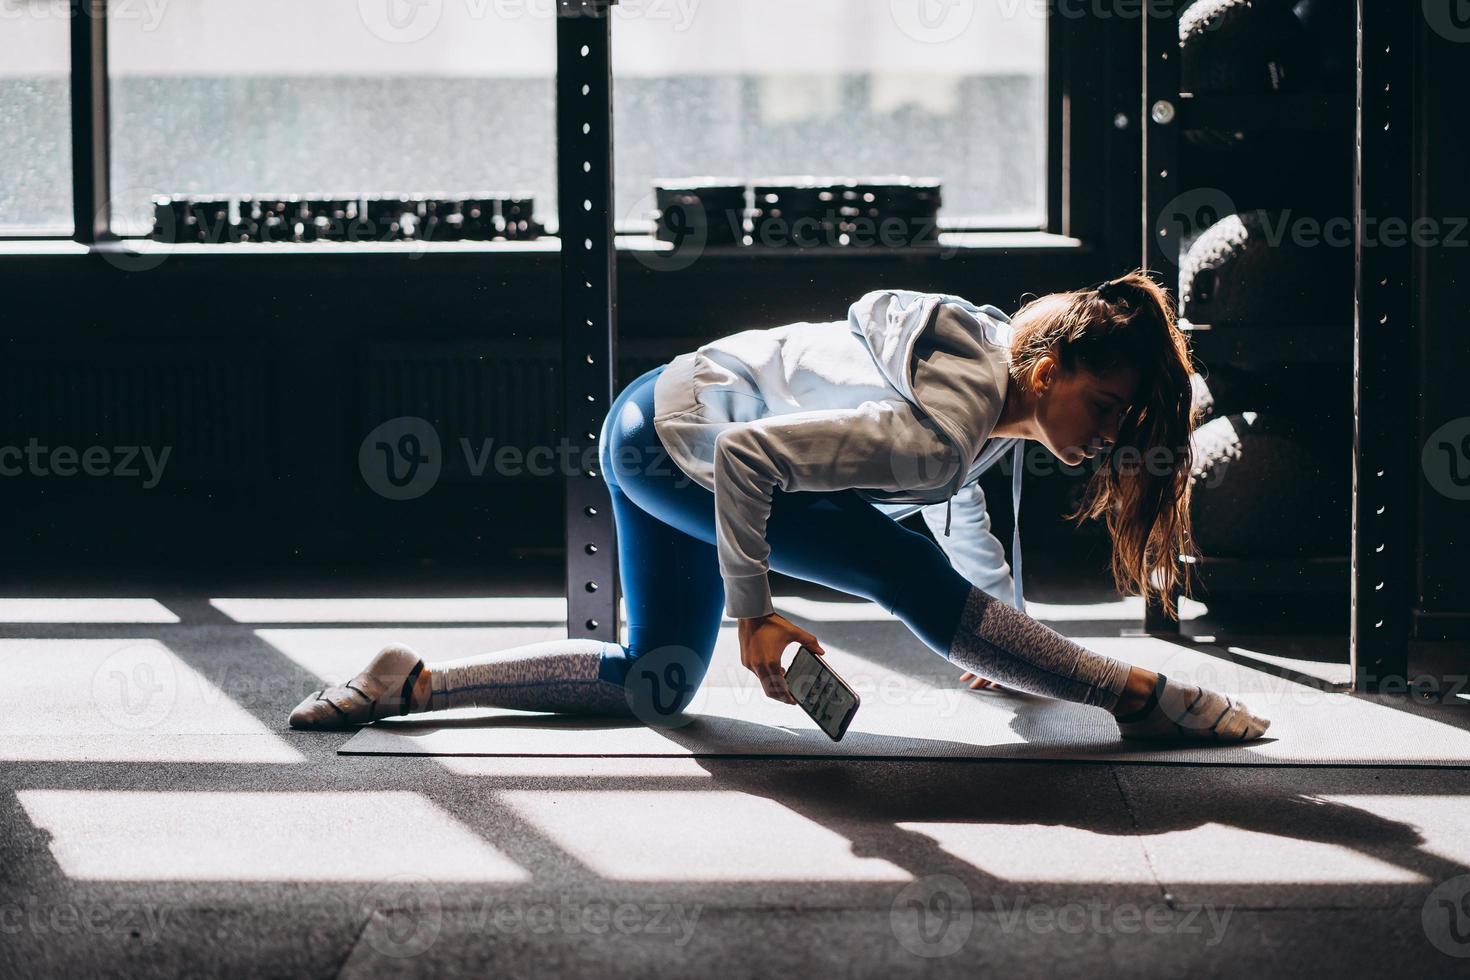 portrait d'une jeune femme attirante faisant du yoga ou des exercices de pilates photo